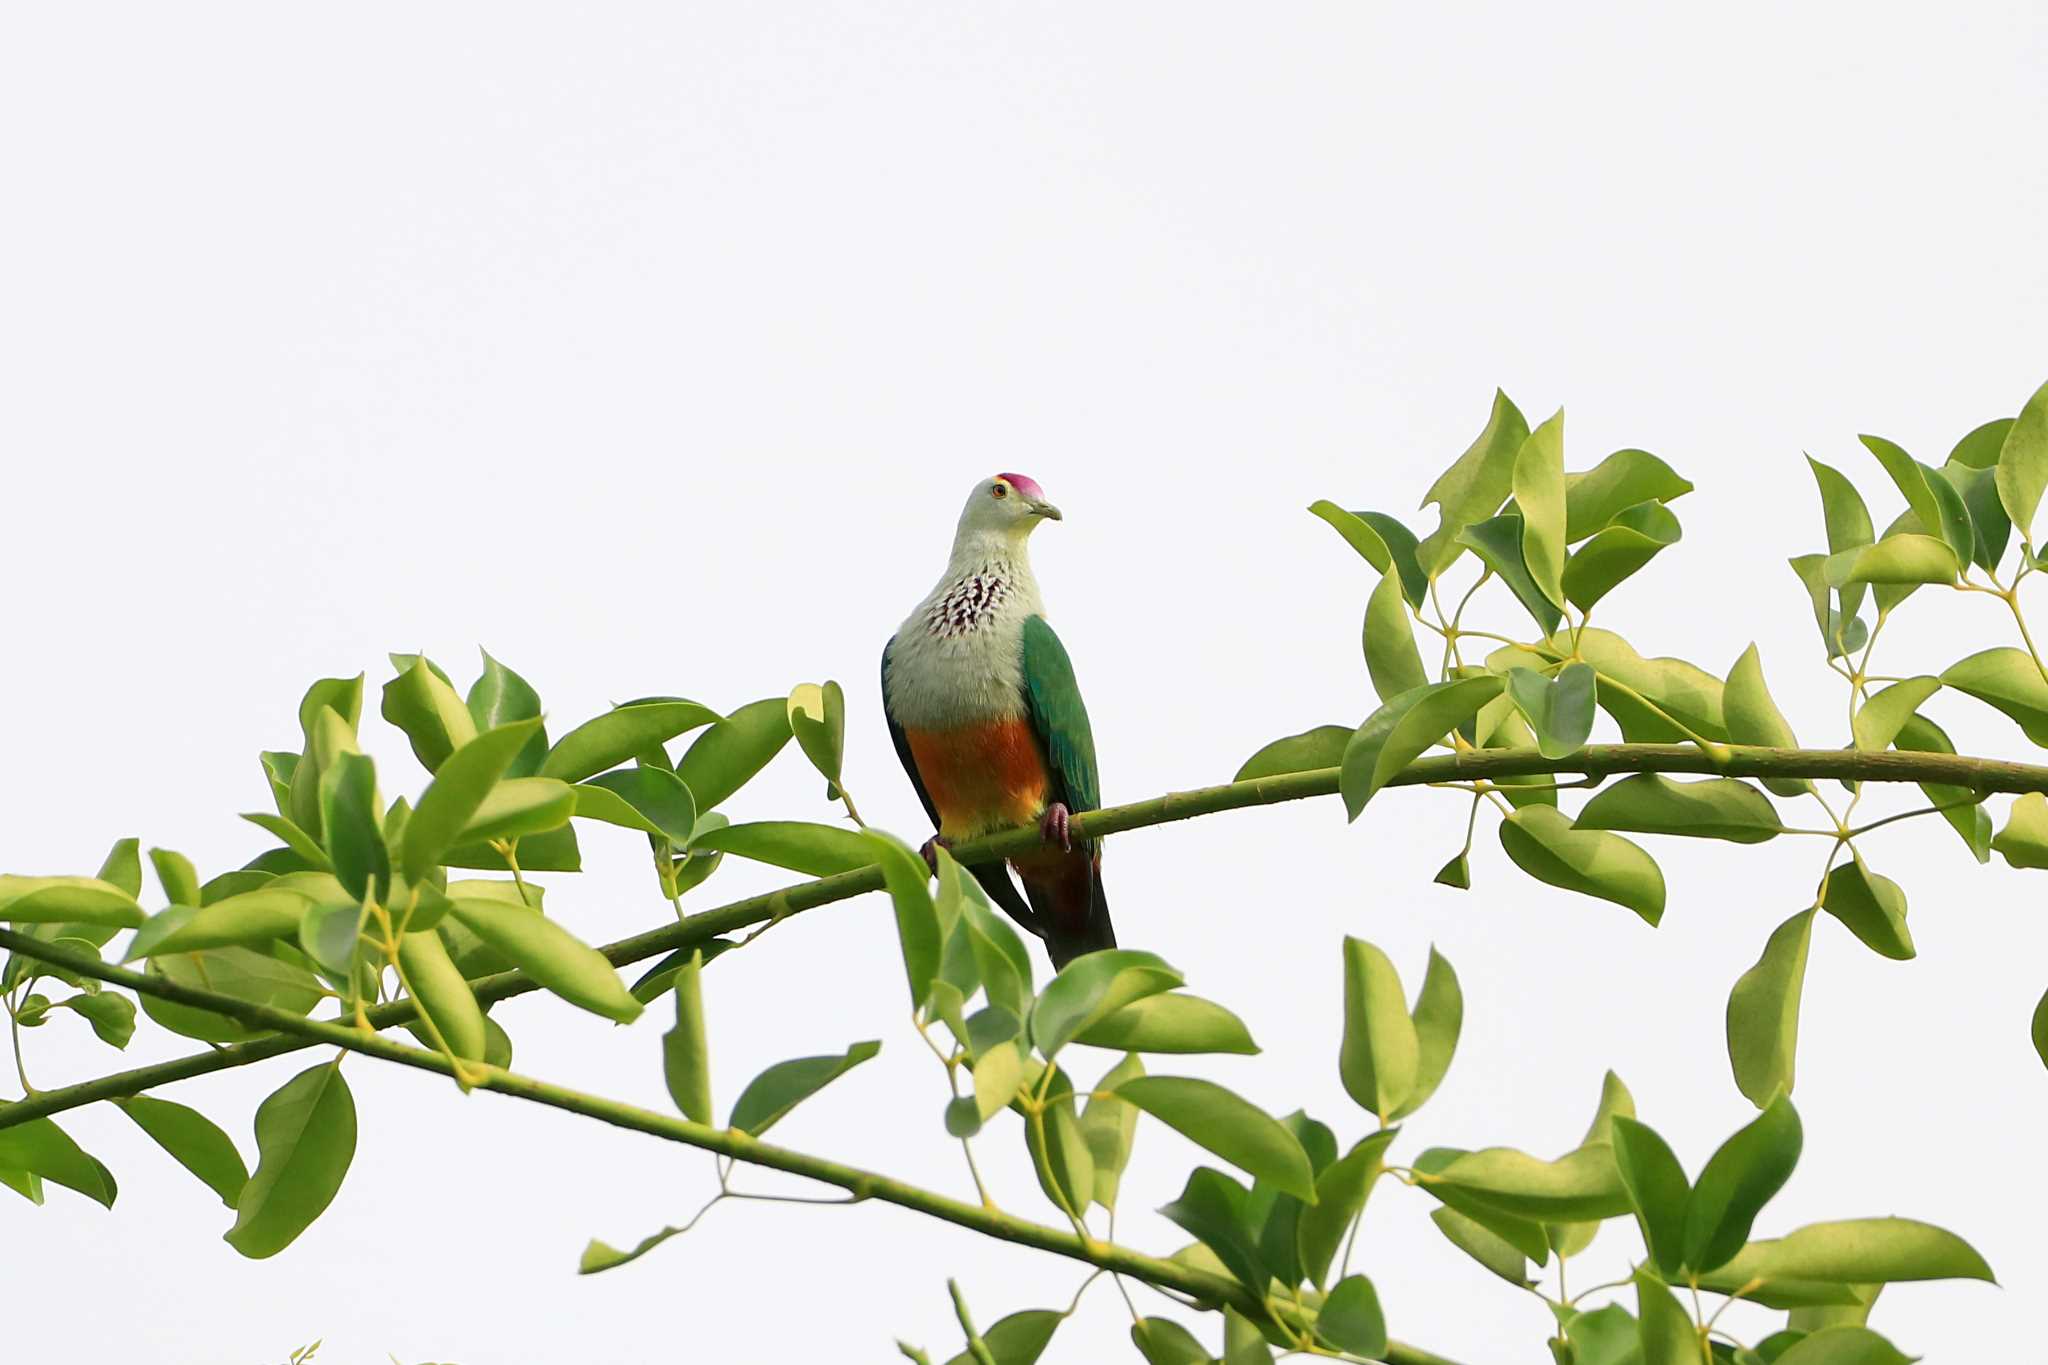 Photo of Palau Fruit Dove at Peleliu Island (Palau) by とみやん